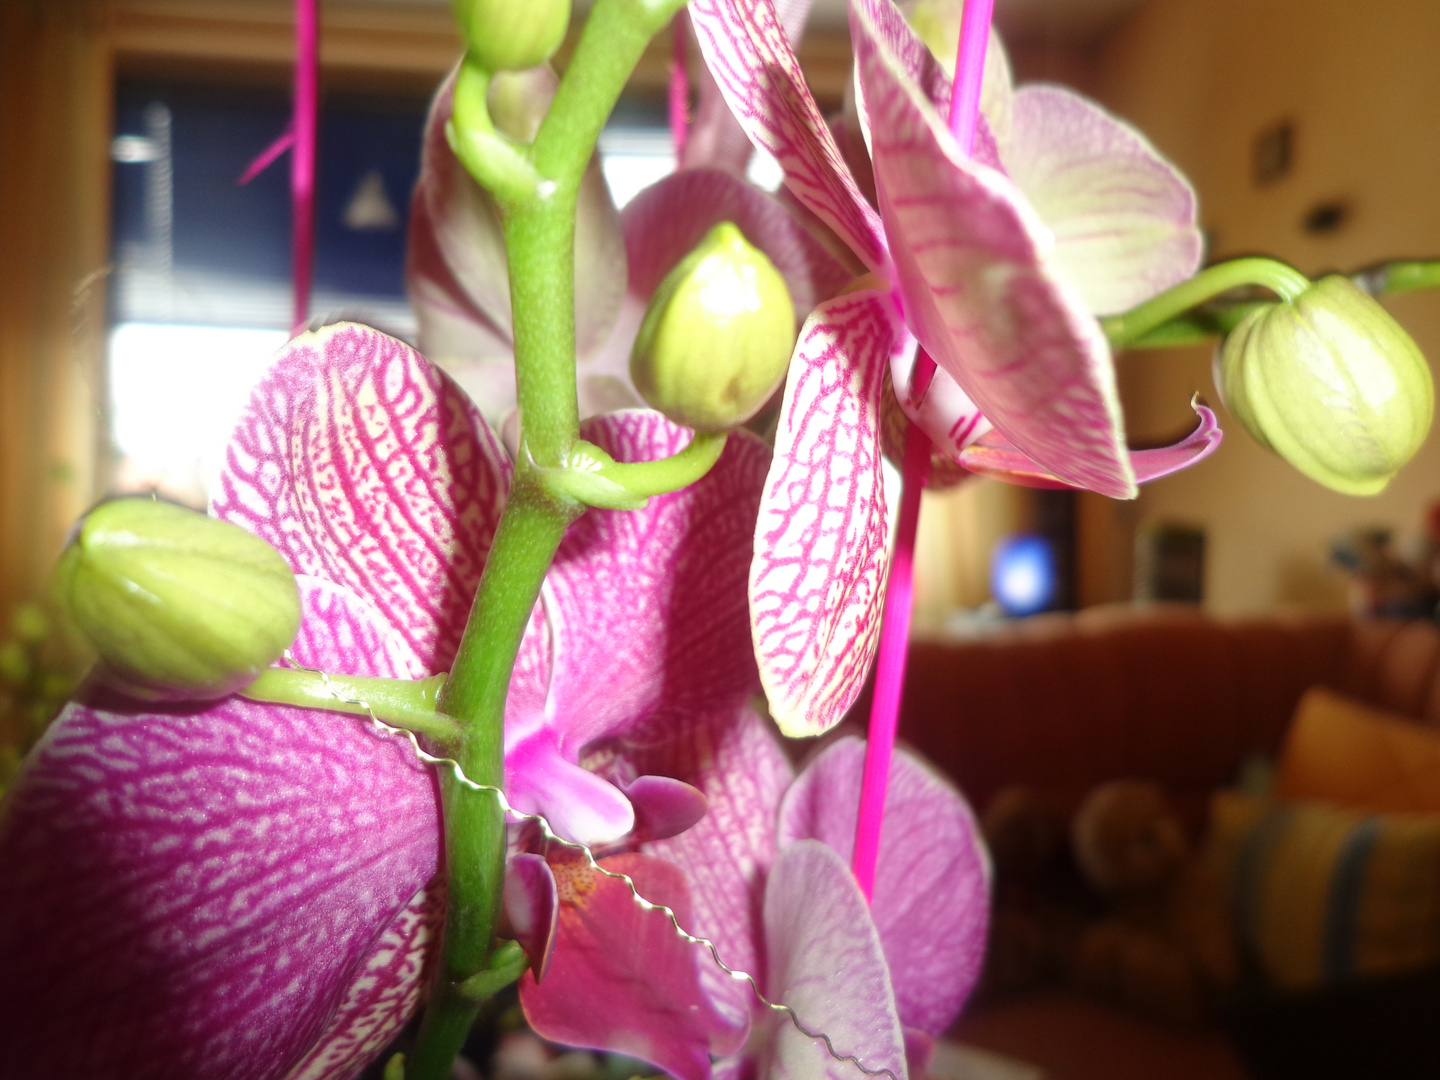 Orchidee Fuchsia gestromt mit Knospen und Triebe